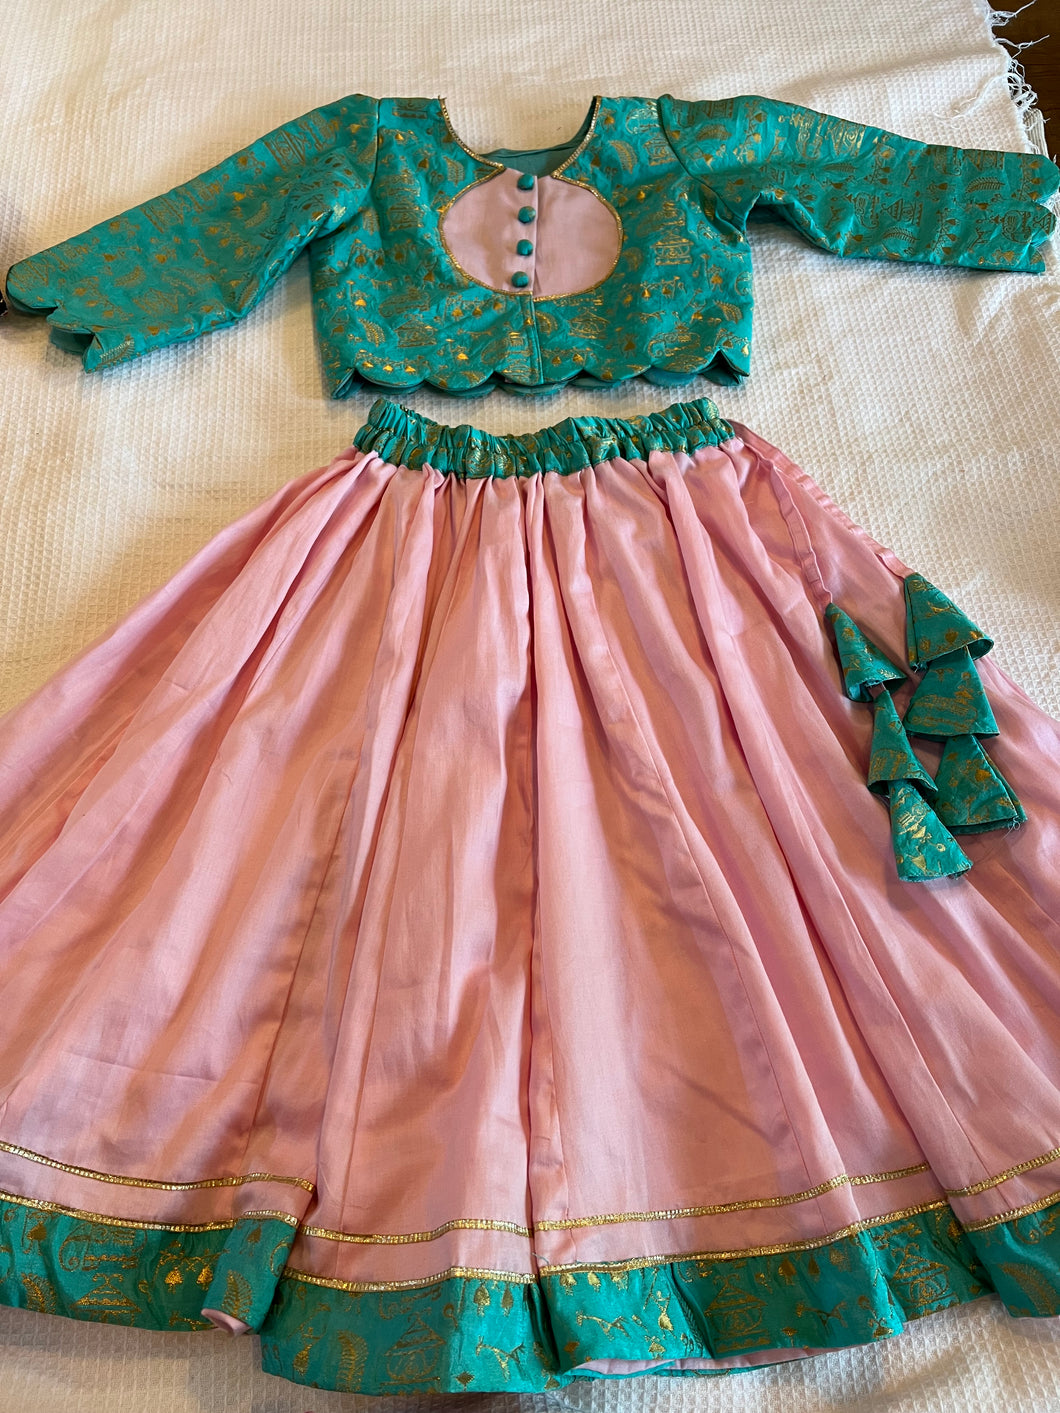 Klingaru Lehanga Choli  - Green with Pink Skirt - Banarasi hand woven with  Glaze Cotton Skirt  -  Preorder